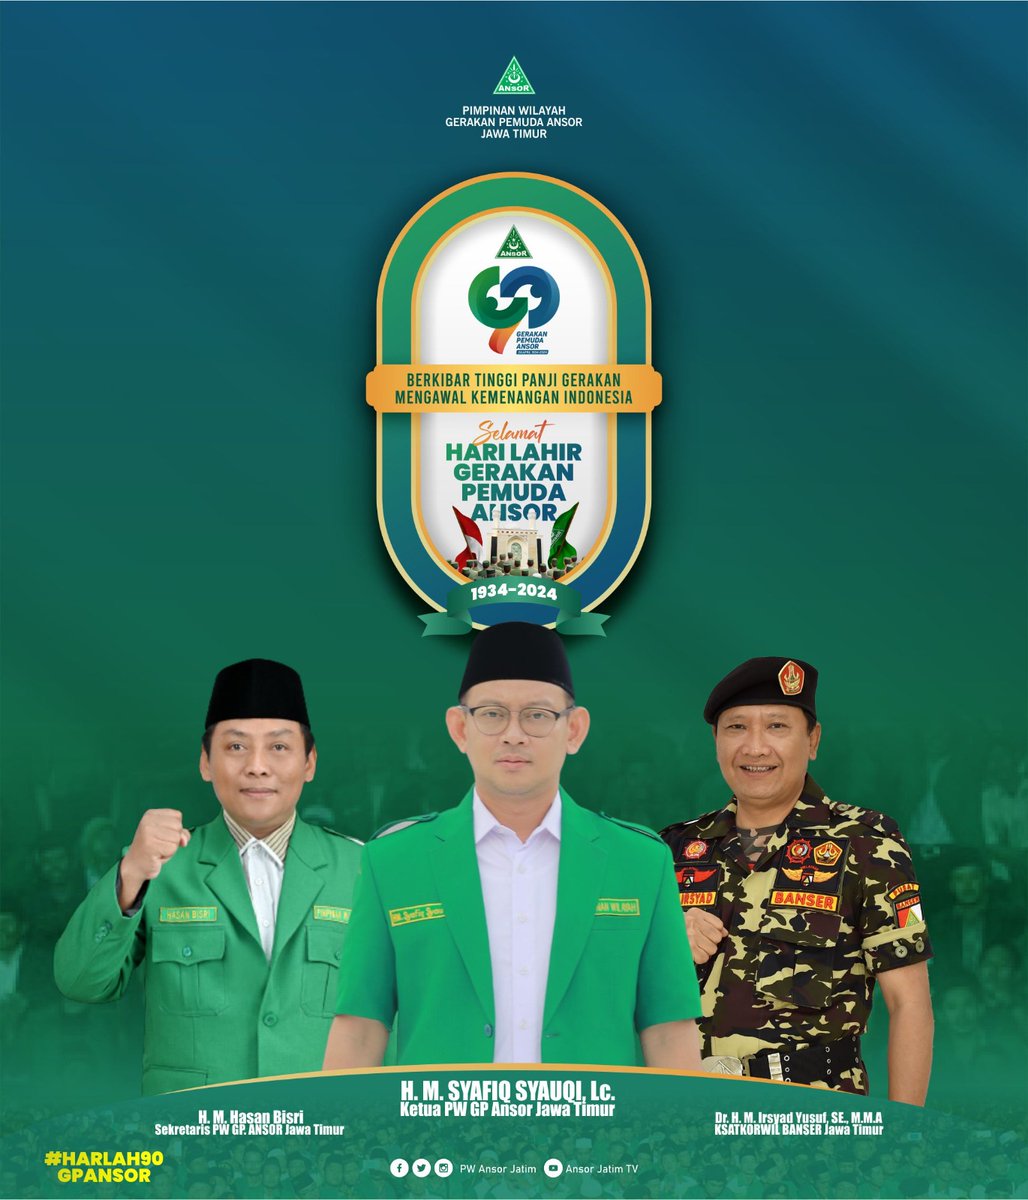 'Berkibar Tinggi Panji Gerakan Mengawal Kemenangan Indonesia' Selamat Hari Lahir Gerakan Pemuda Ansor ke 90 Tahun, 24 April 2024 #Harlah90GPAnsor